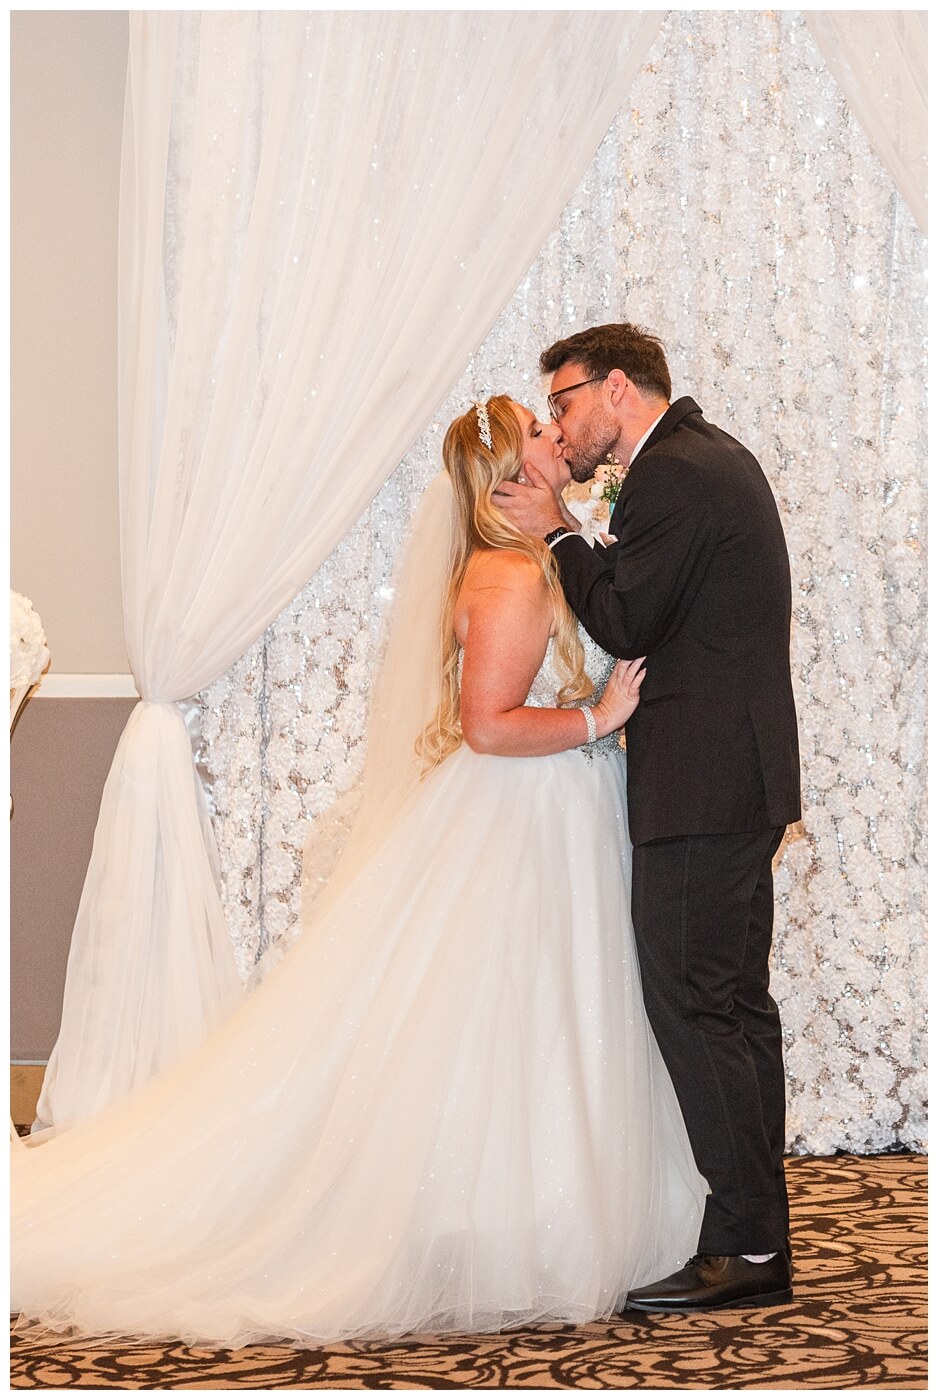 Brett & Rachelle - Delta Regina Wedding - 08 - First Kiss as Husband & Wife